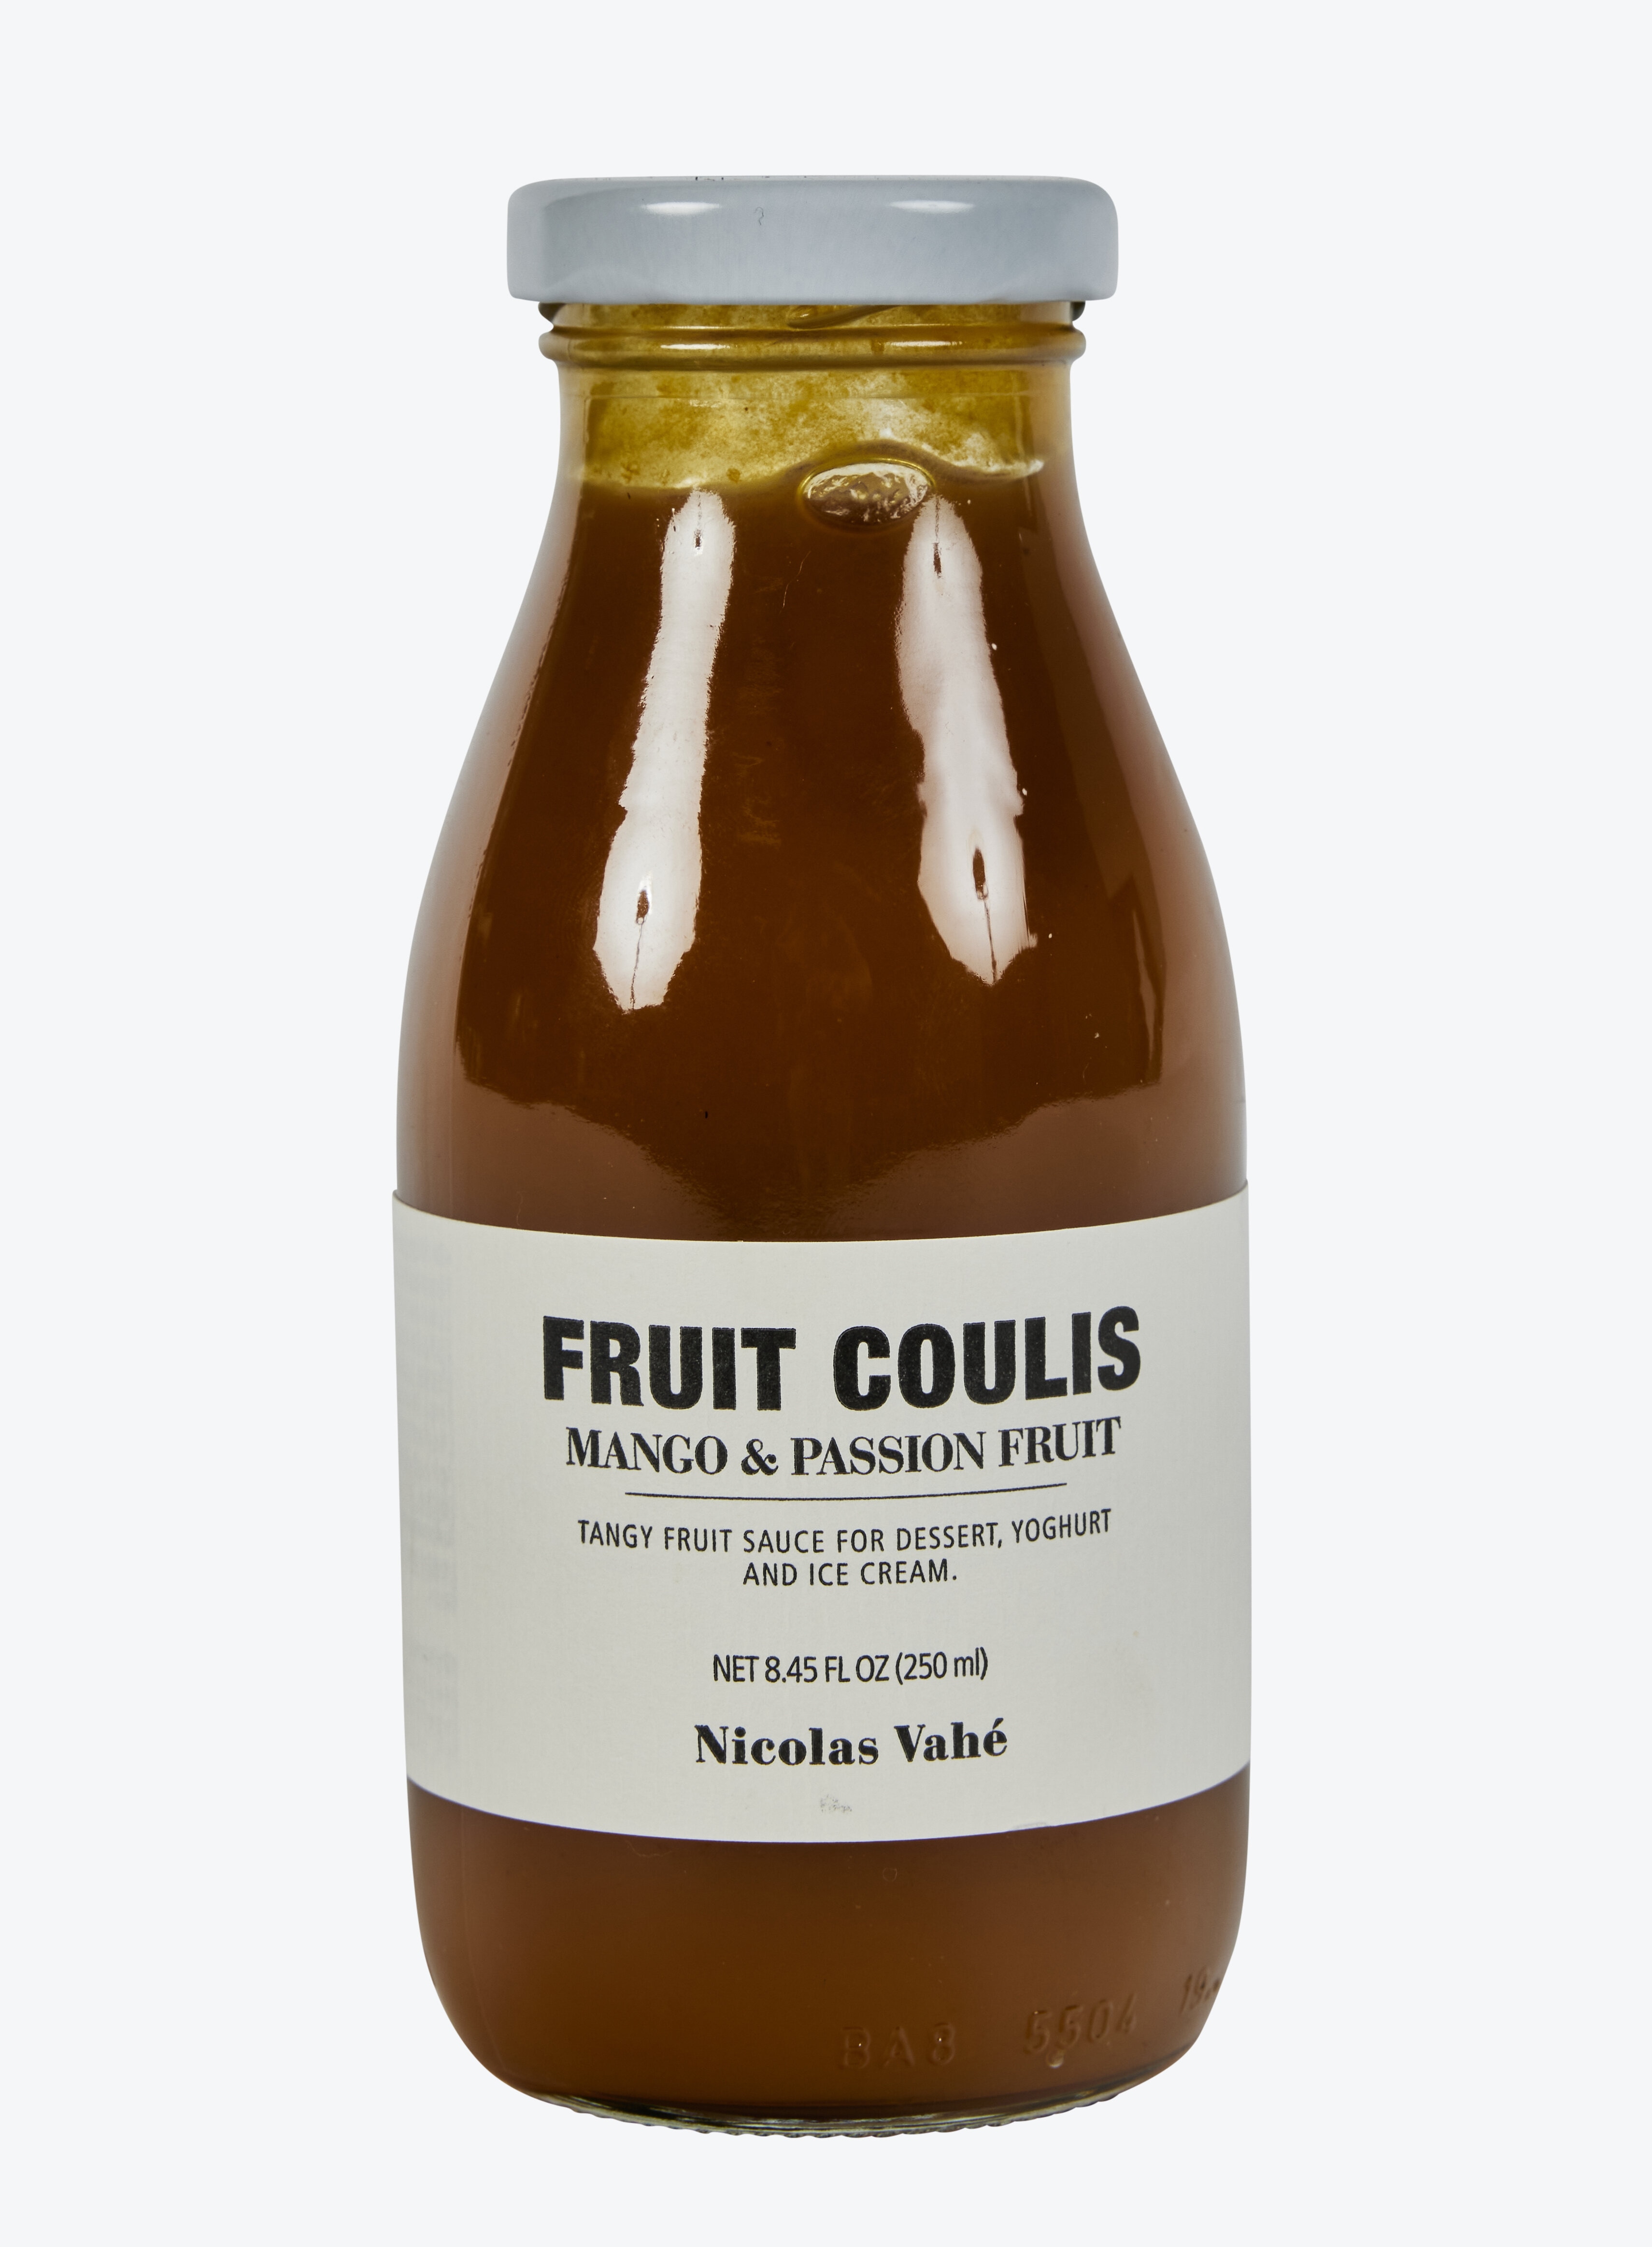 Fruit coulis, Mango & Passion fruit - Nicolas Vahé